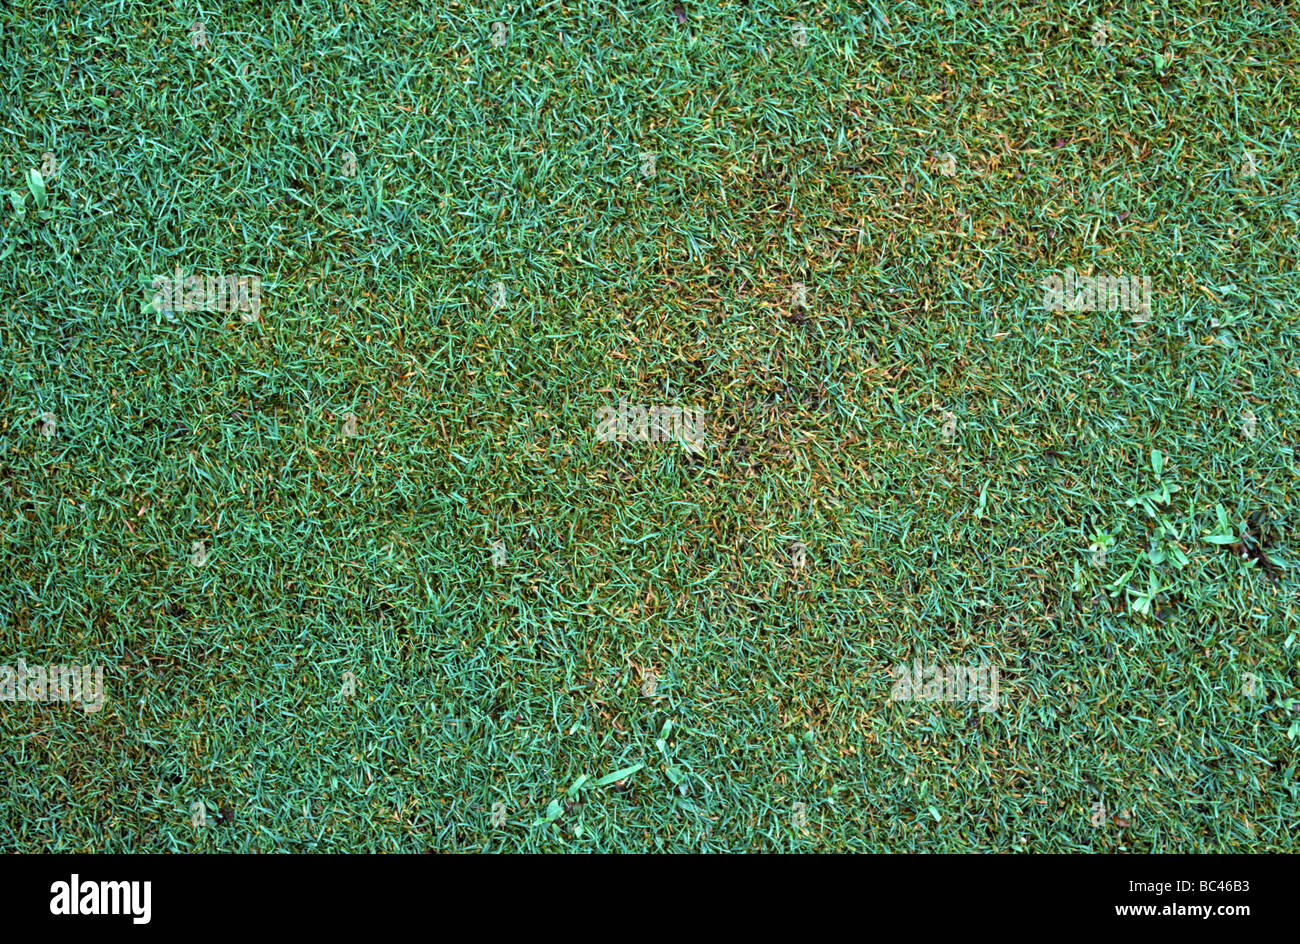 Plaque brune Rhizoctonia solani sur gazon vert golf court Banque D'Images